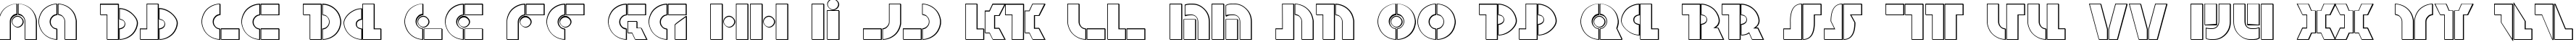 Пример написания английского алфавита шрифтом Questlok Shadow